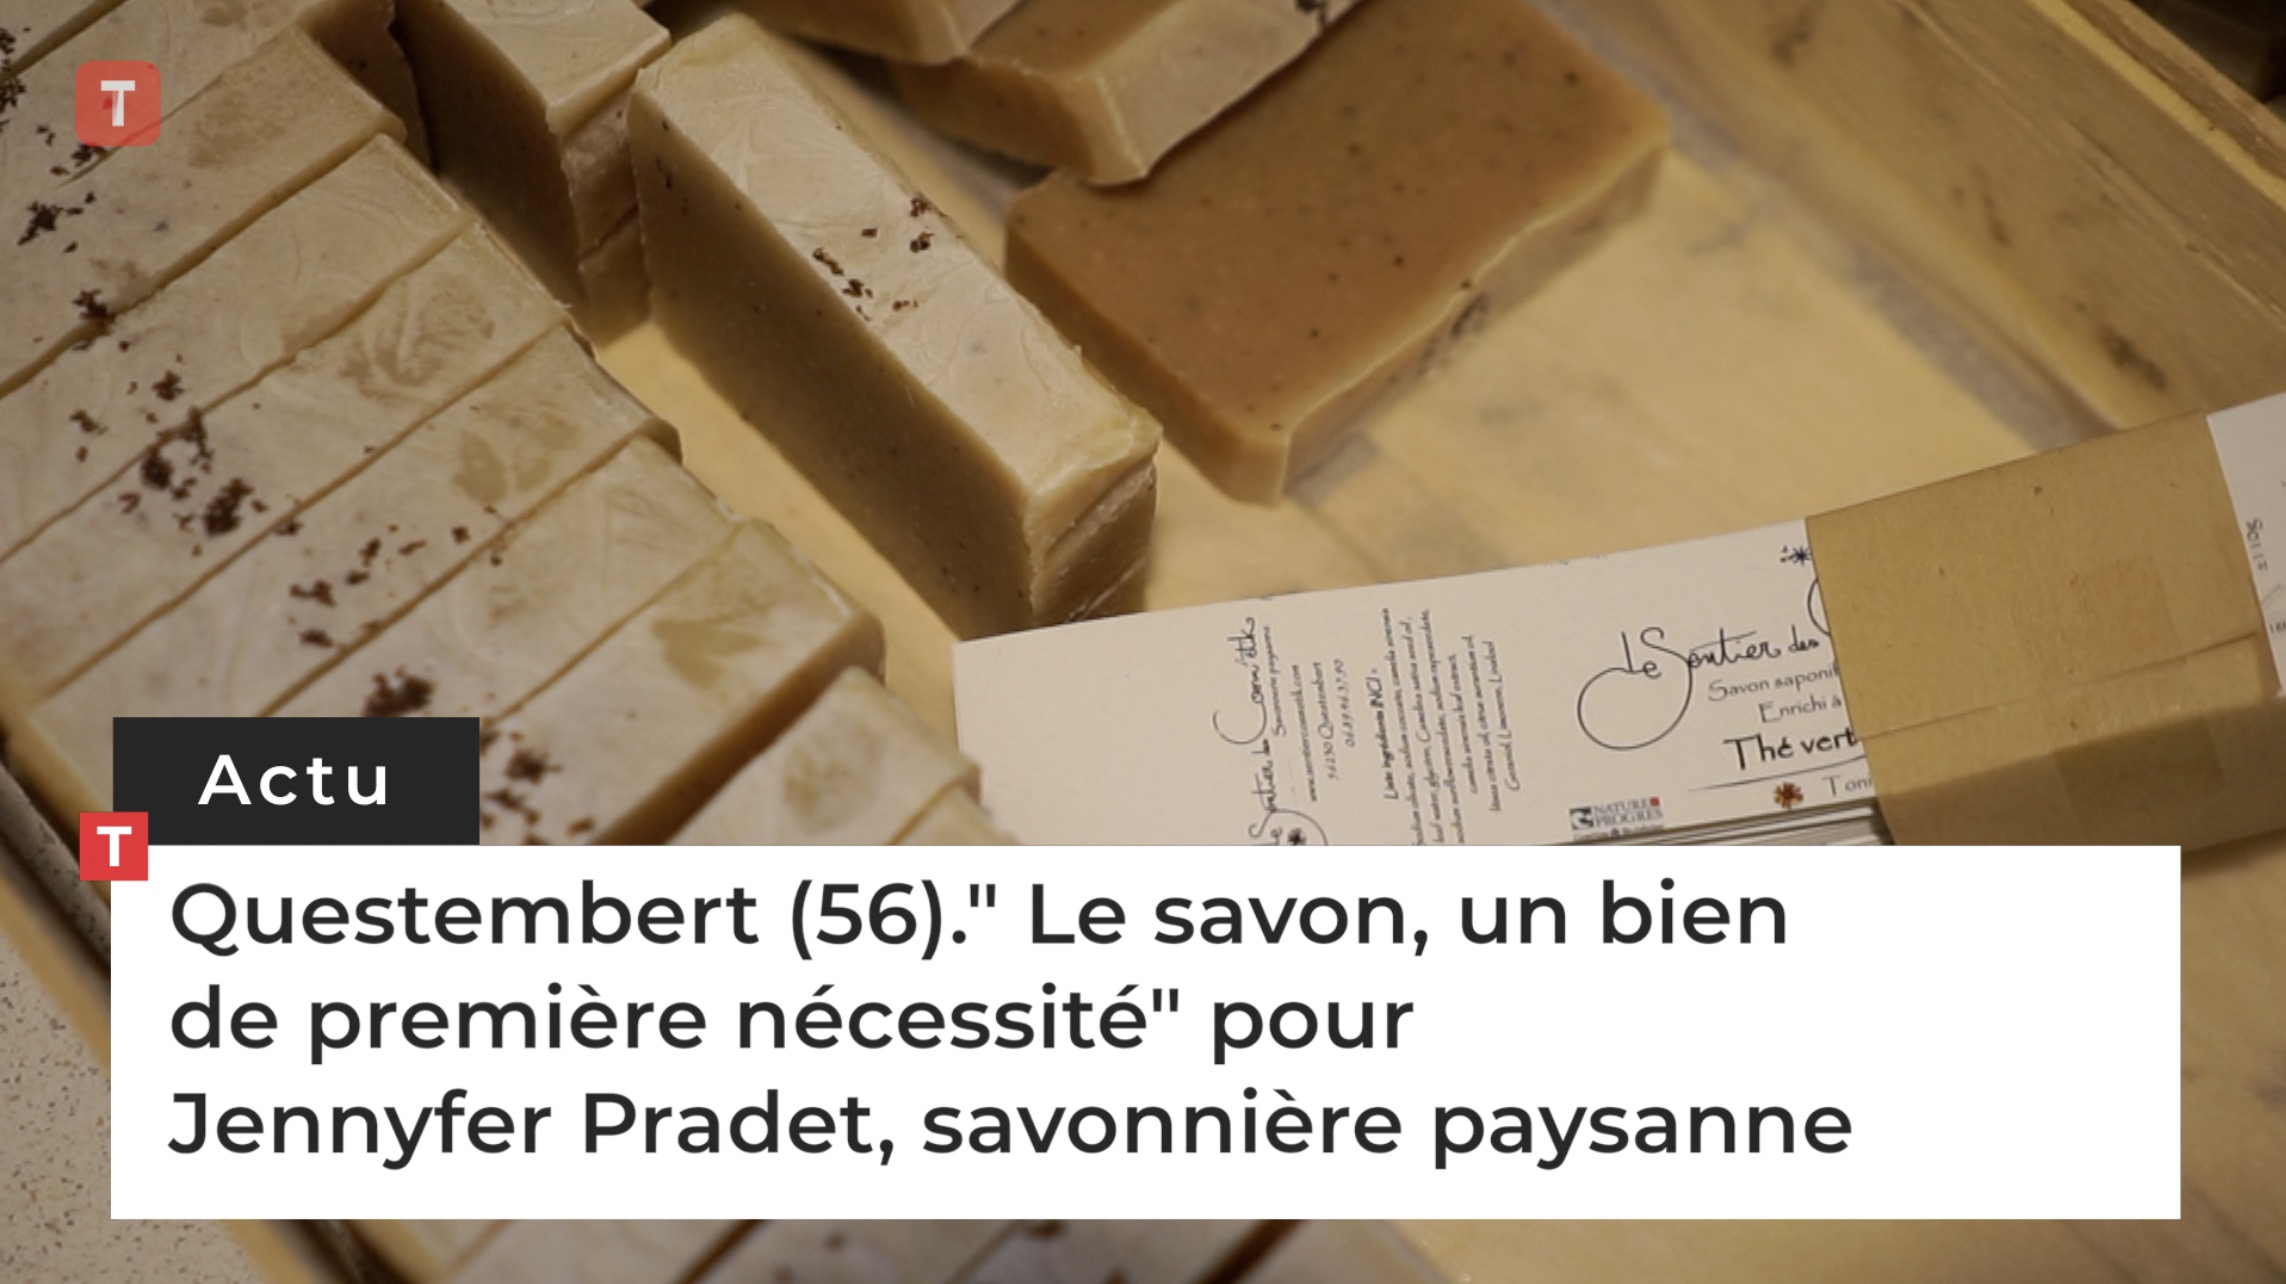 Questembert (56)." Le savon, un bien de première nécessité" pour Jennyfer Pradet, savonnière paysanne (Le Télégramme)